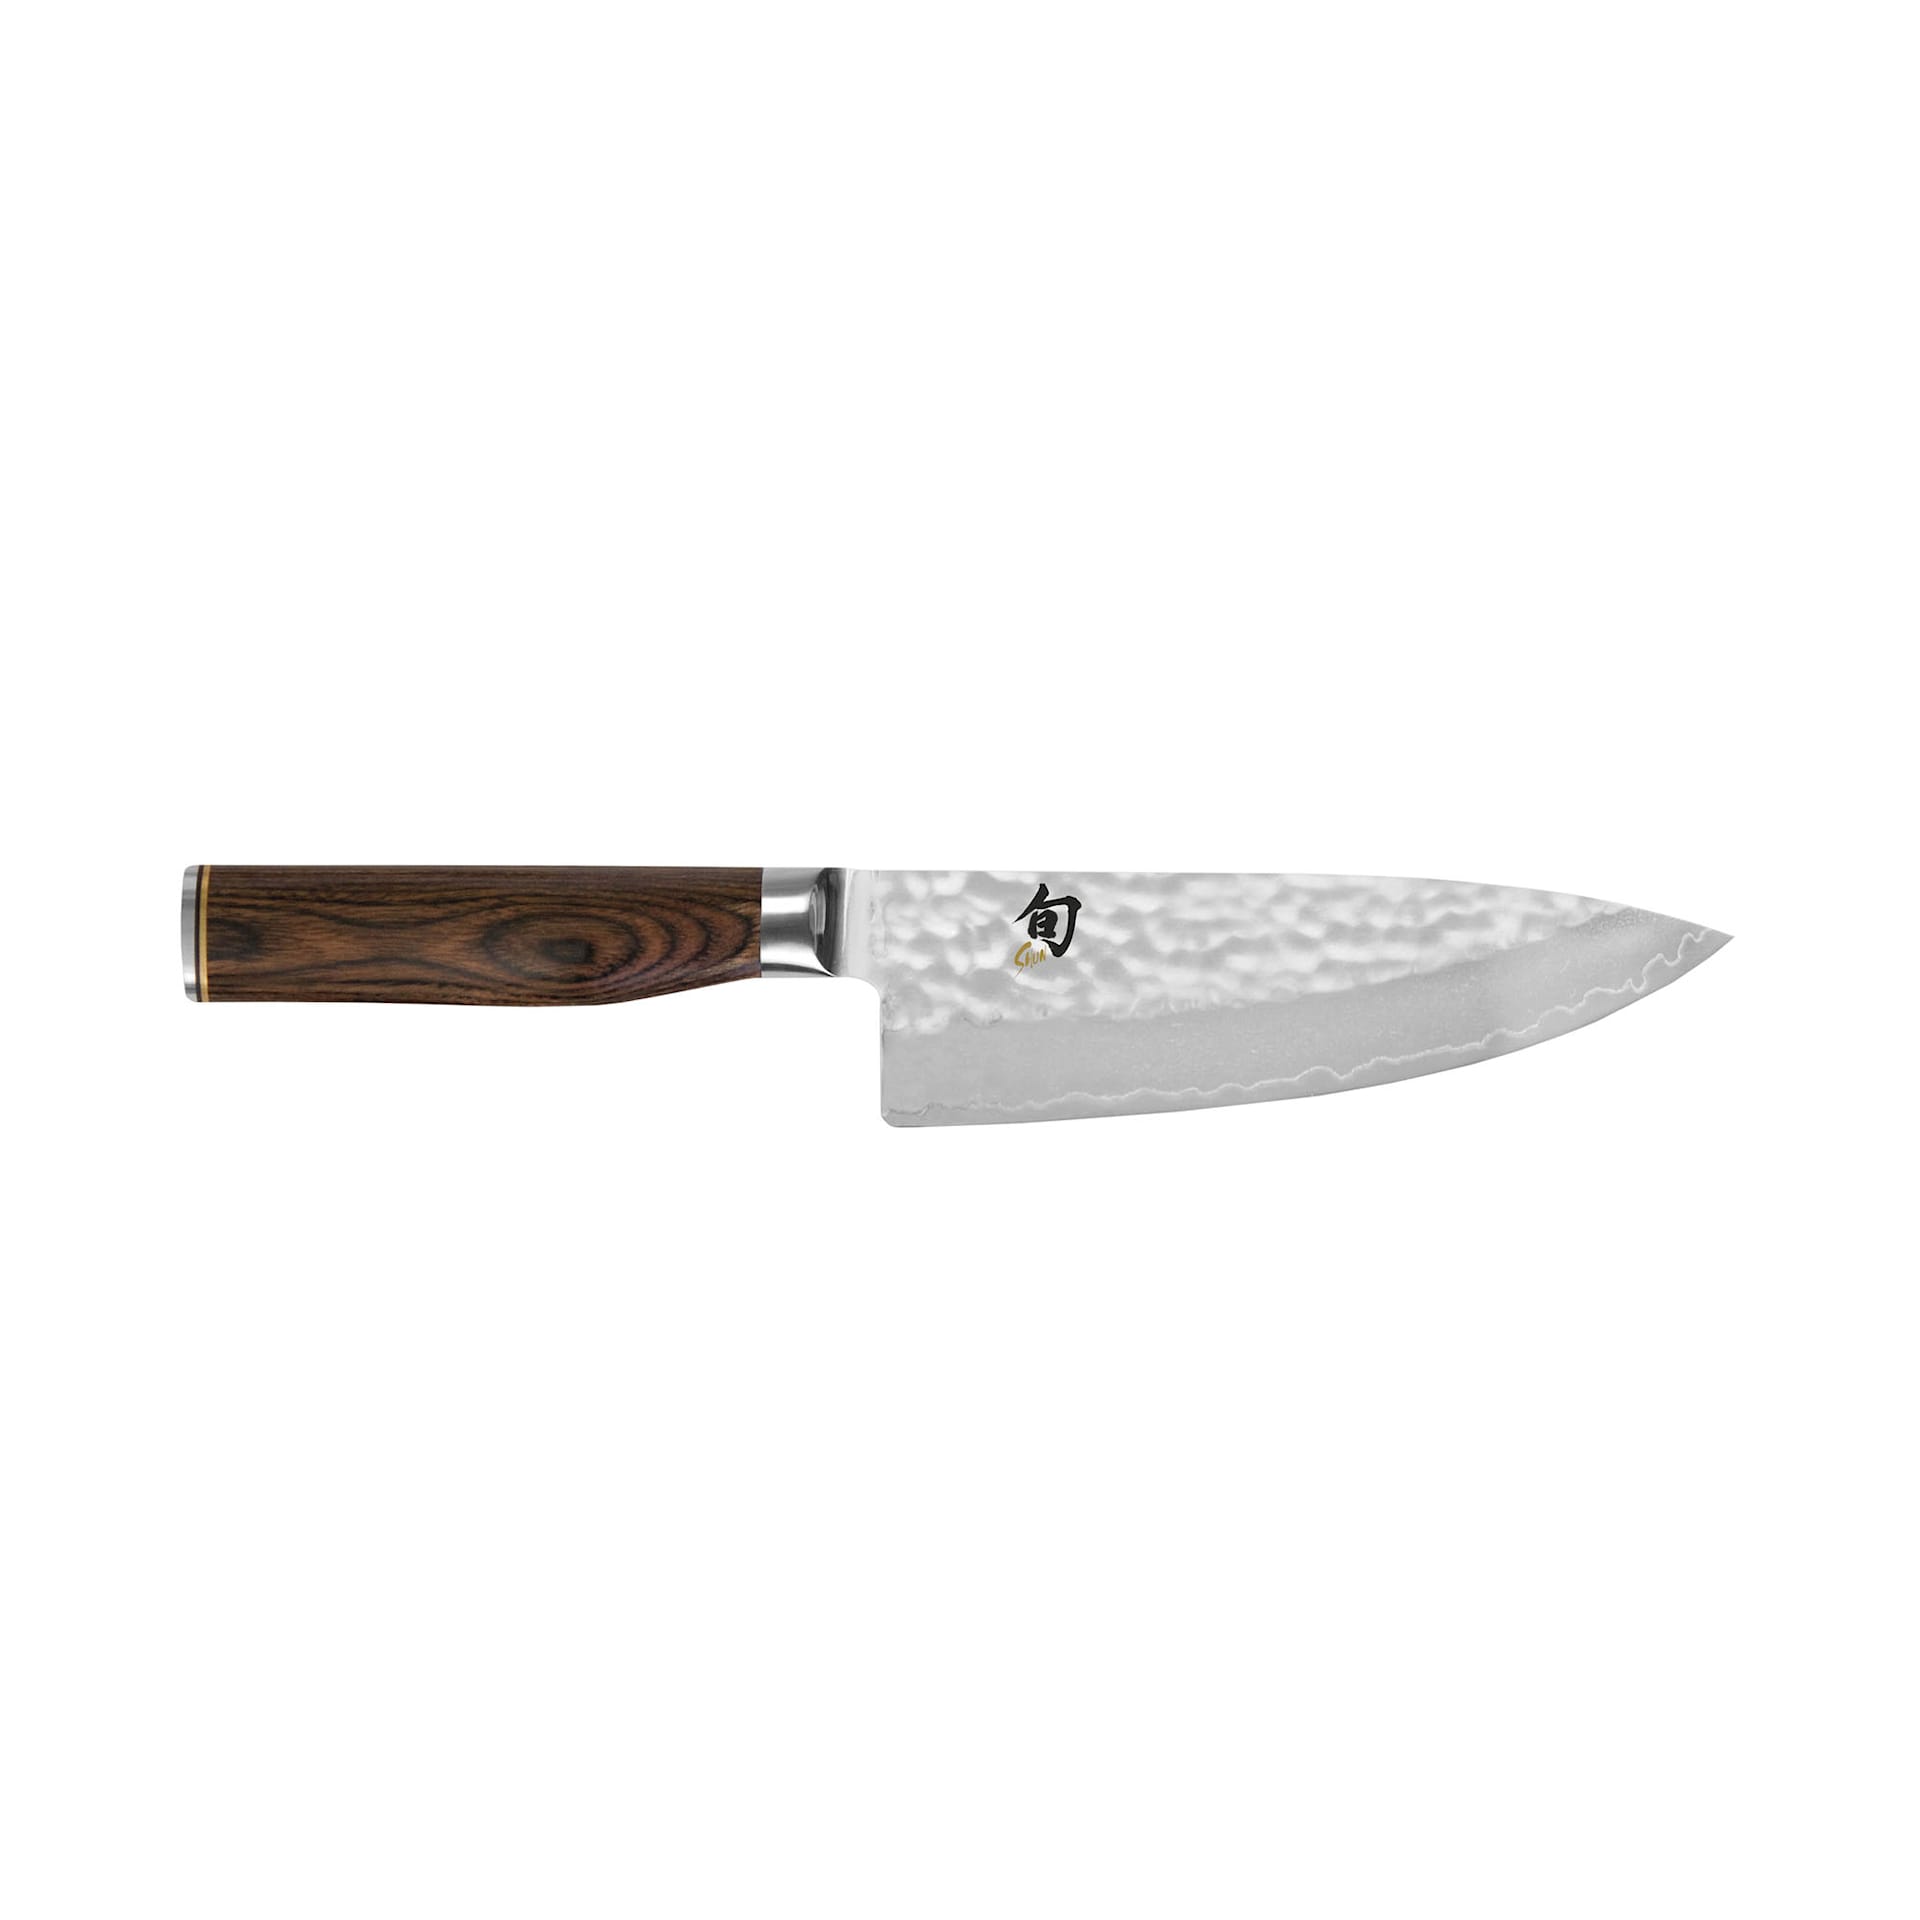 SHUN PREMIER Chef's knife 15 cm - KAI - NO GA